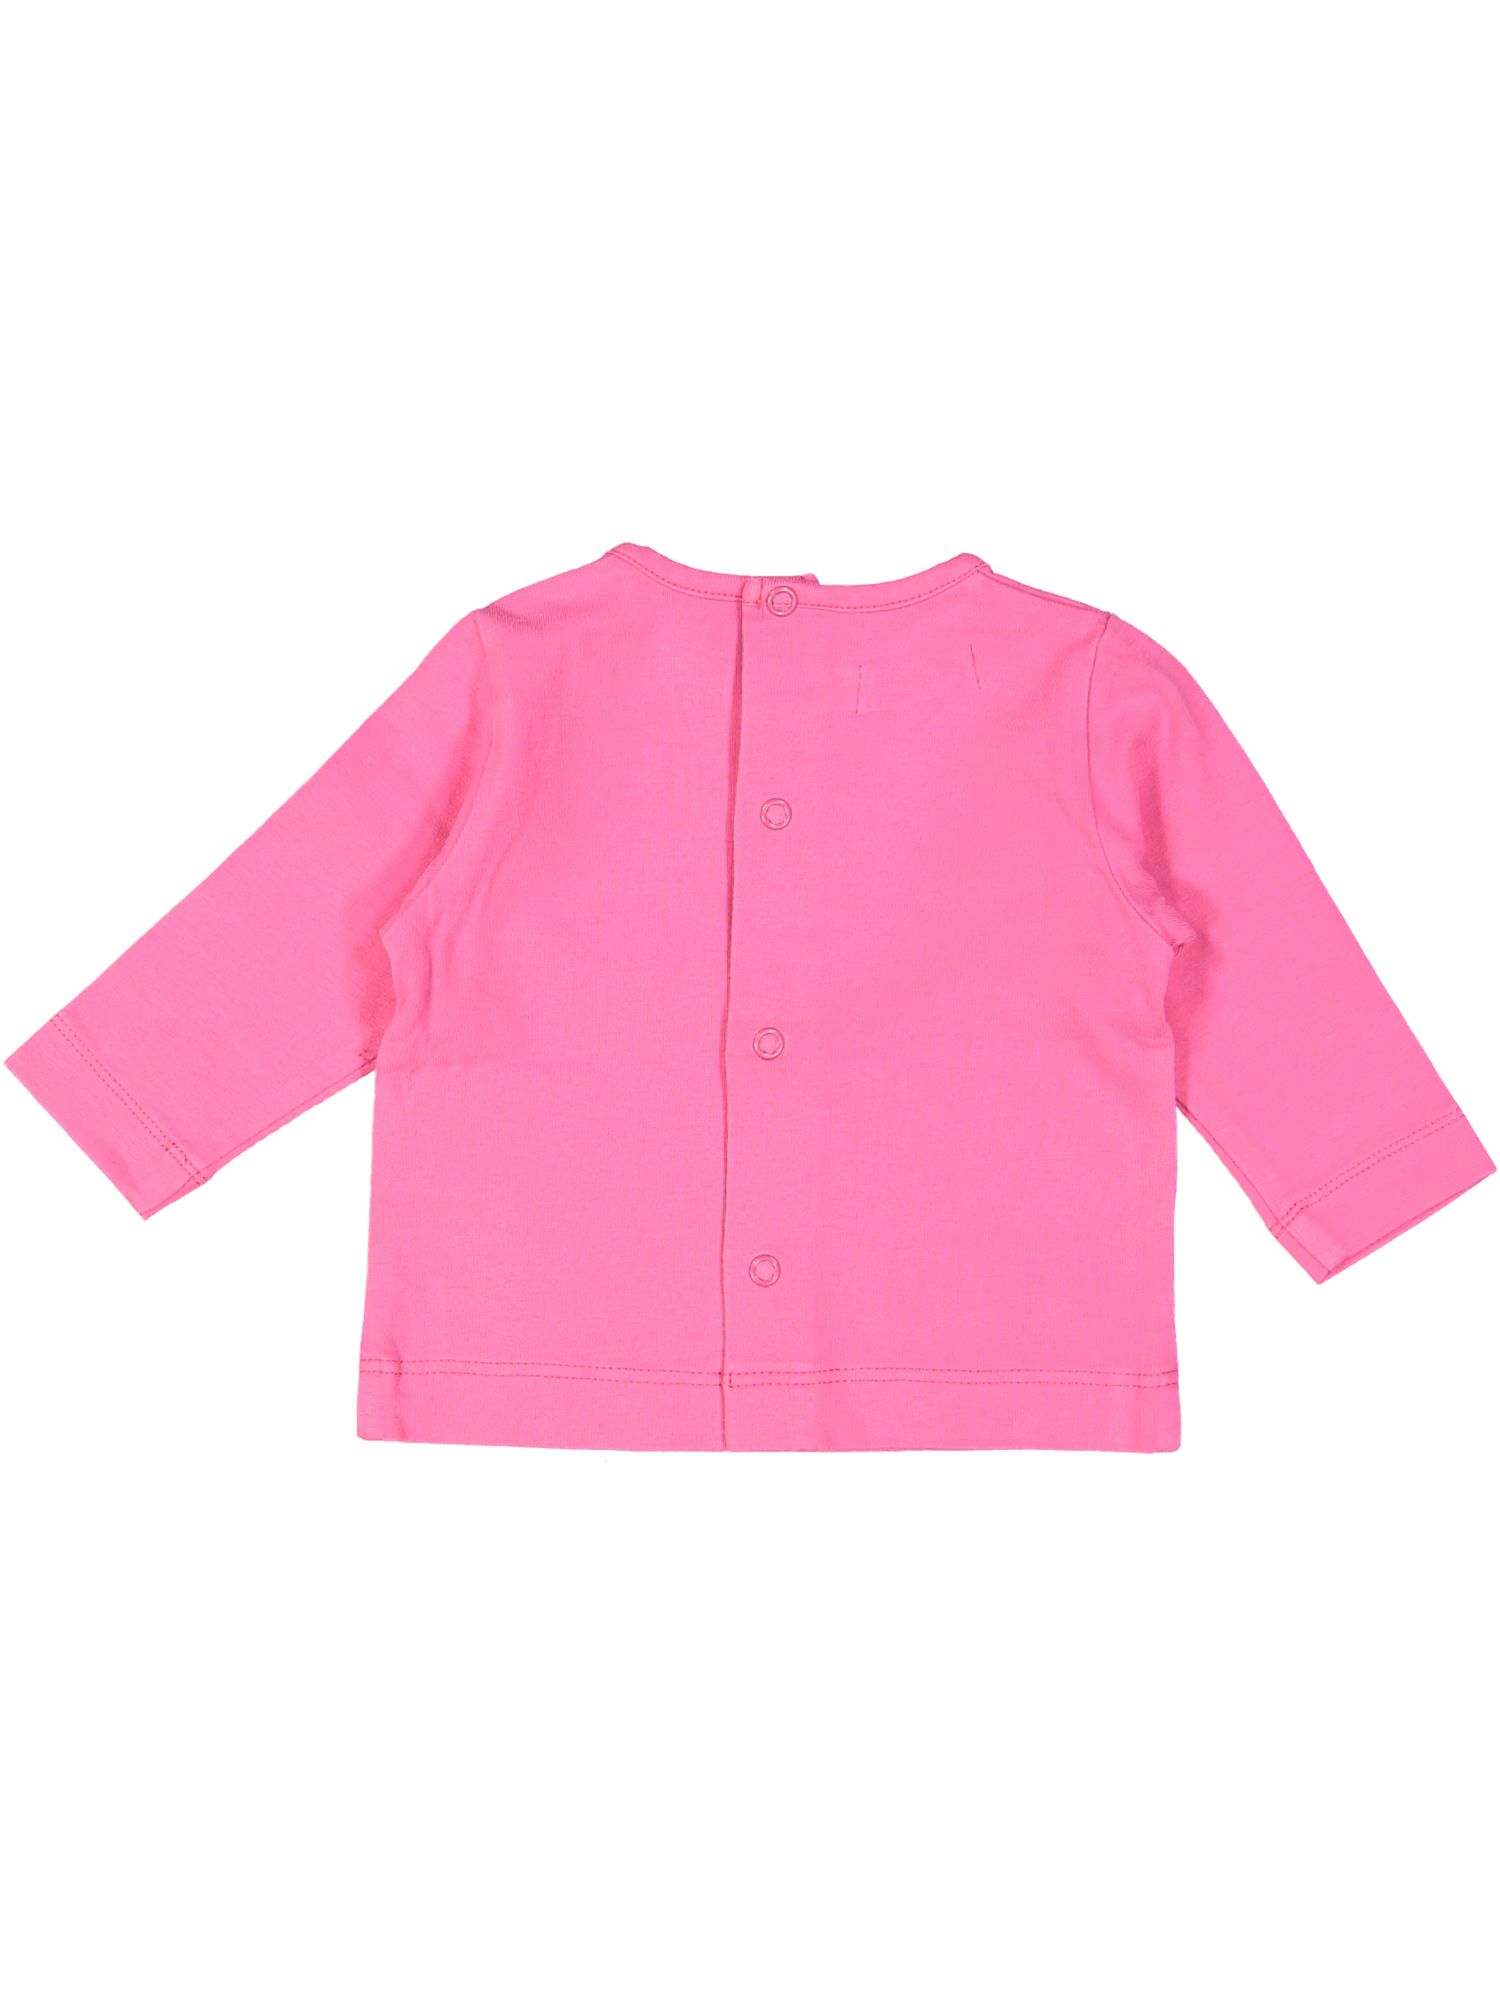 t-shirt roze bird 01m .